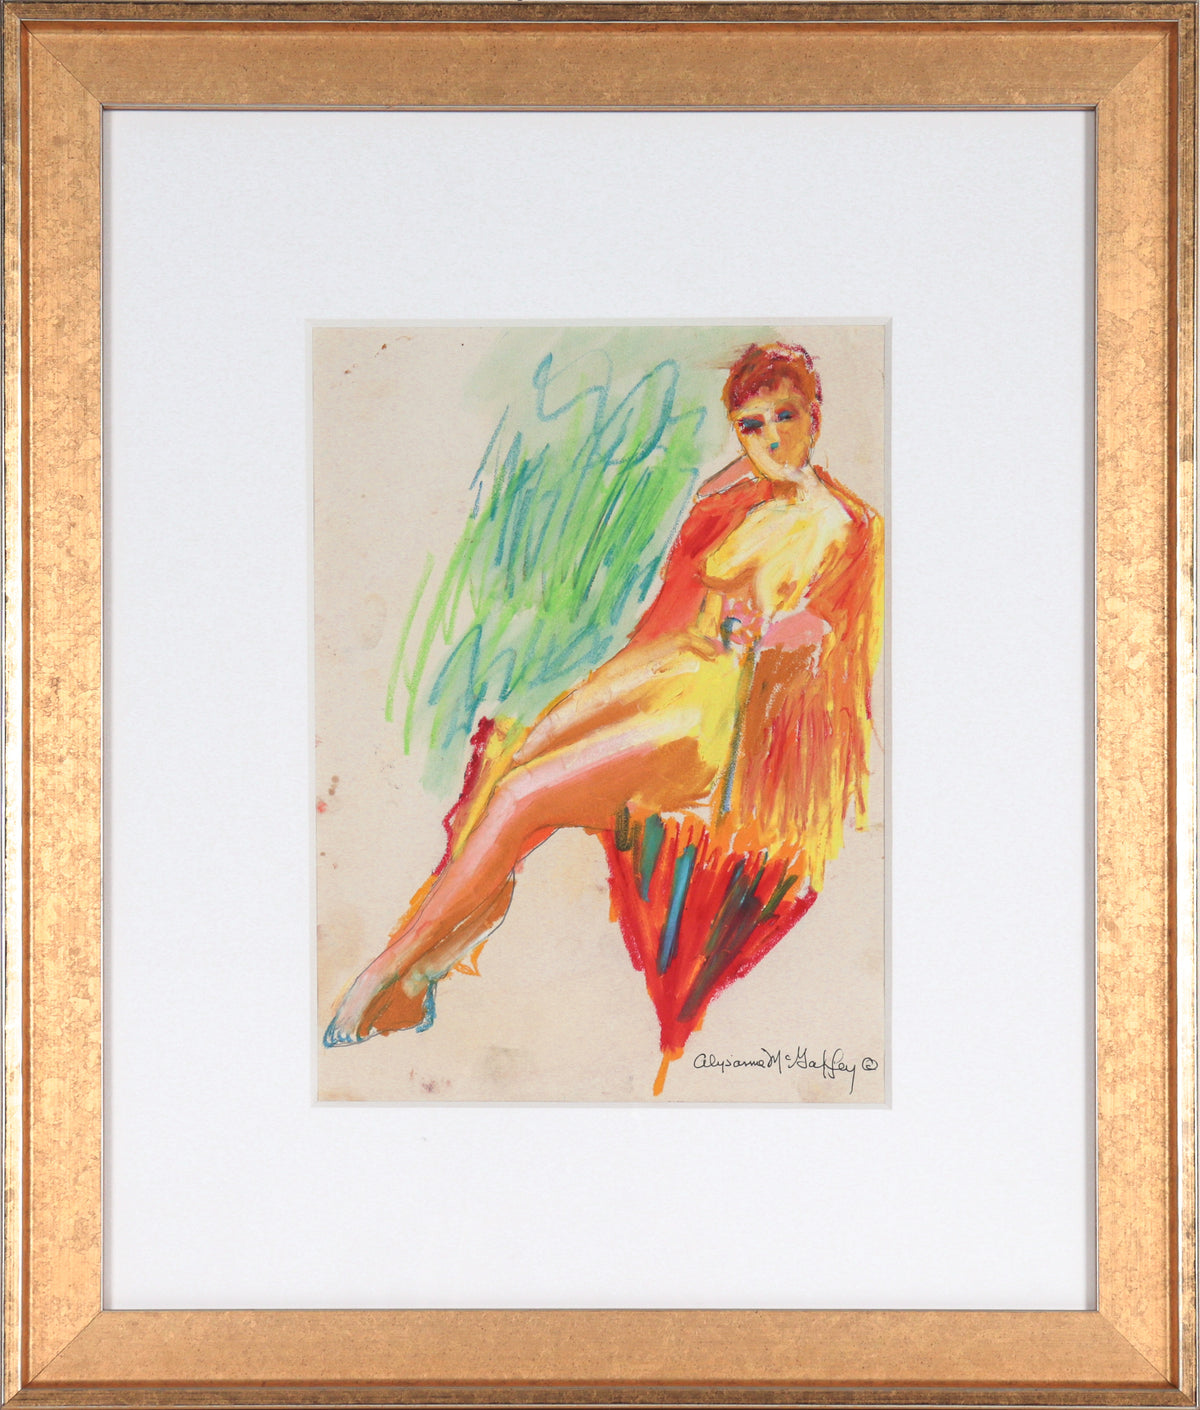 Warm Toned Nude Drawing&lt;br&gt;1950-60s Pastel&lt;br&gt;&lt;br&gt;#23249